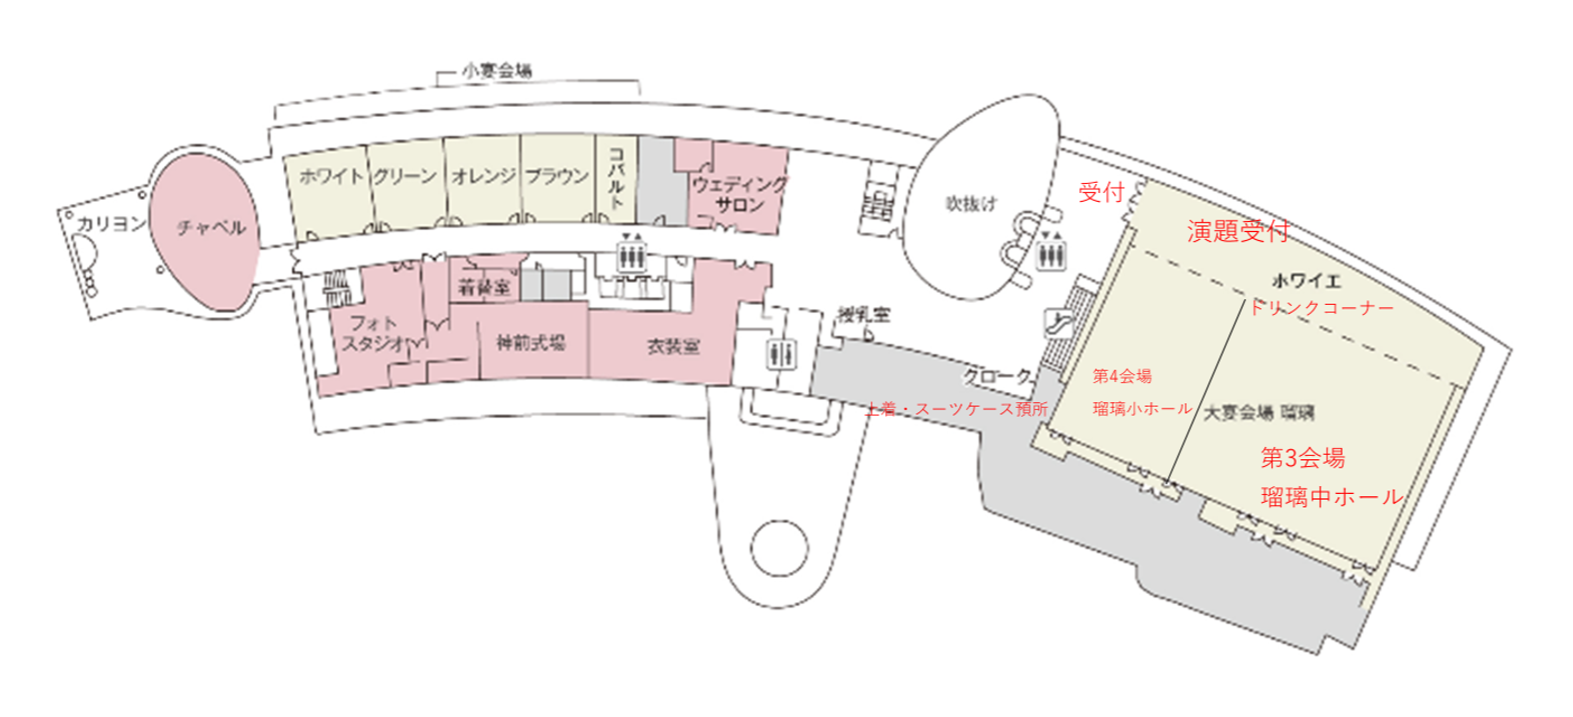 琵琶湖ホテル 3F チャペル・ブライダルサロン・宴会場フロア